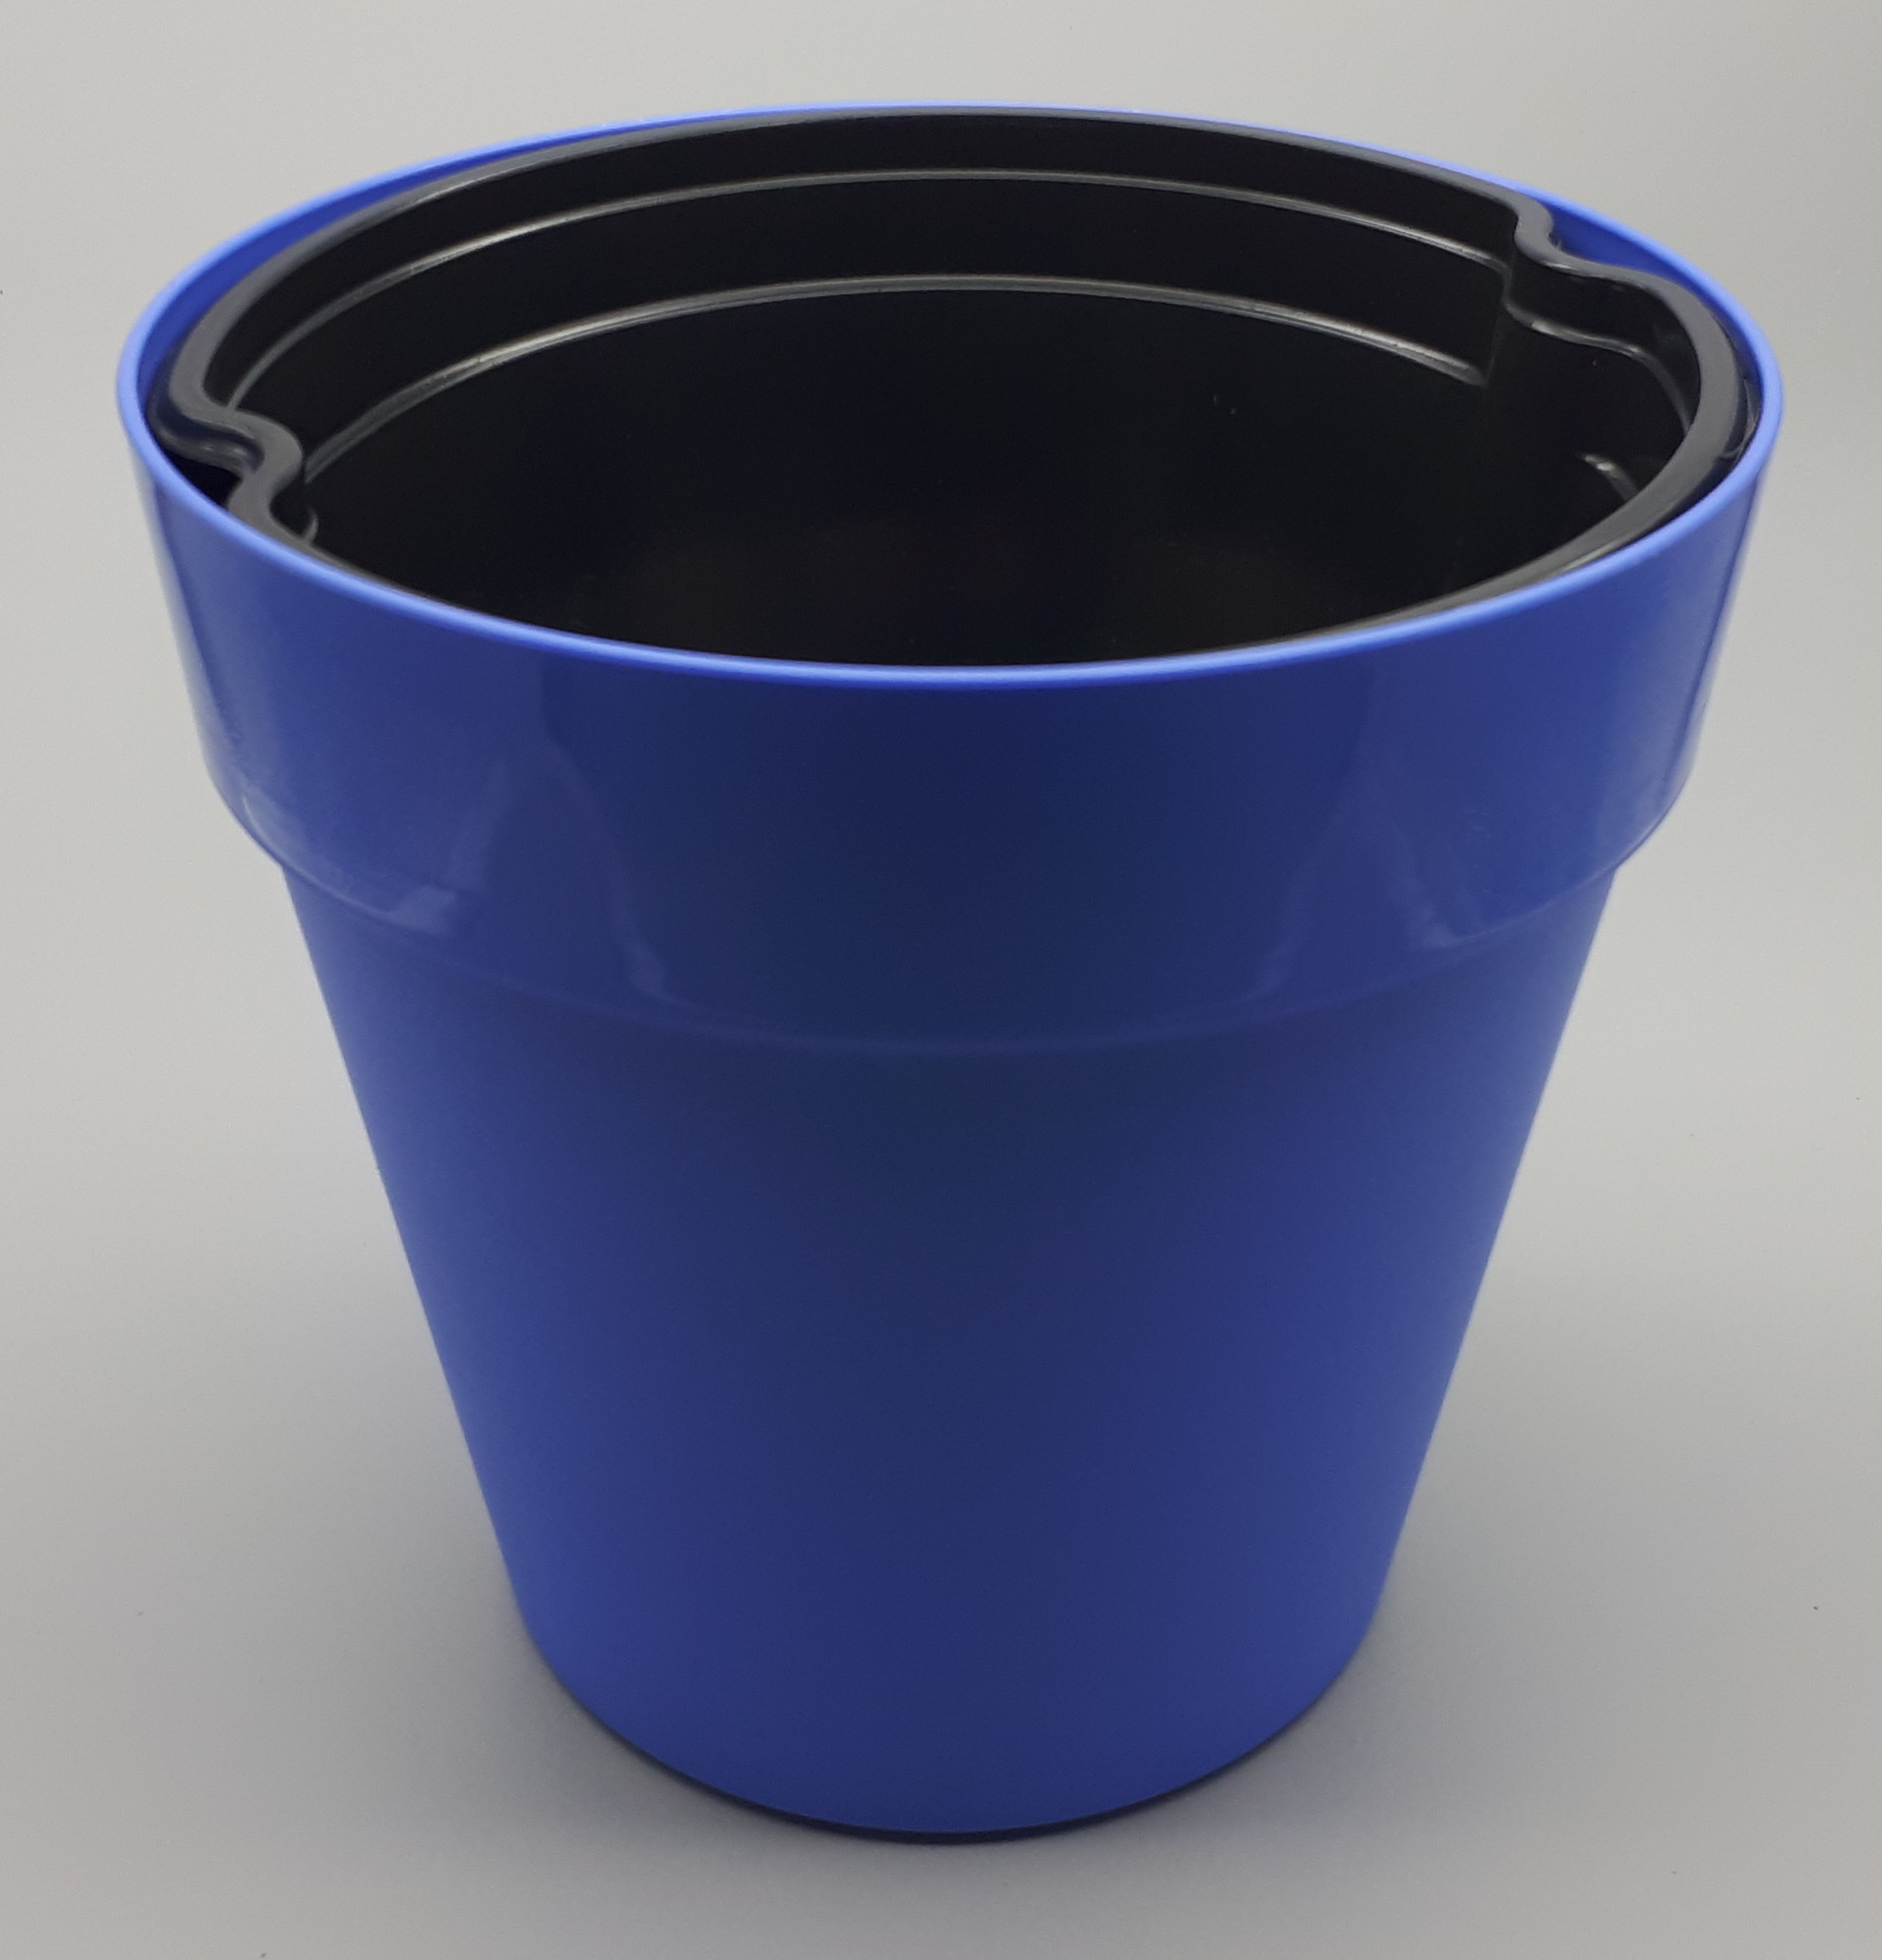 Decor pot blue 21